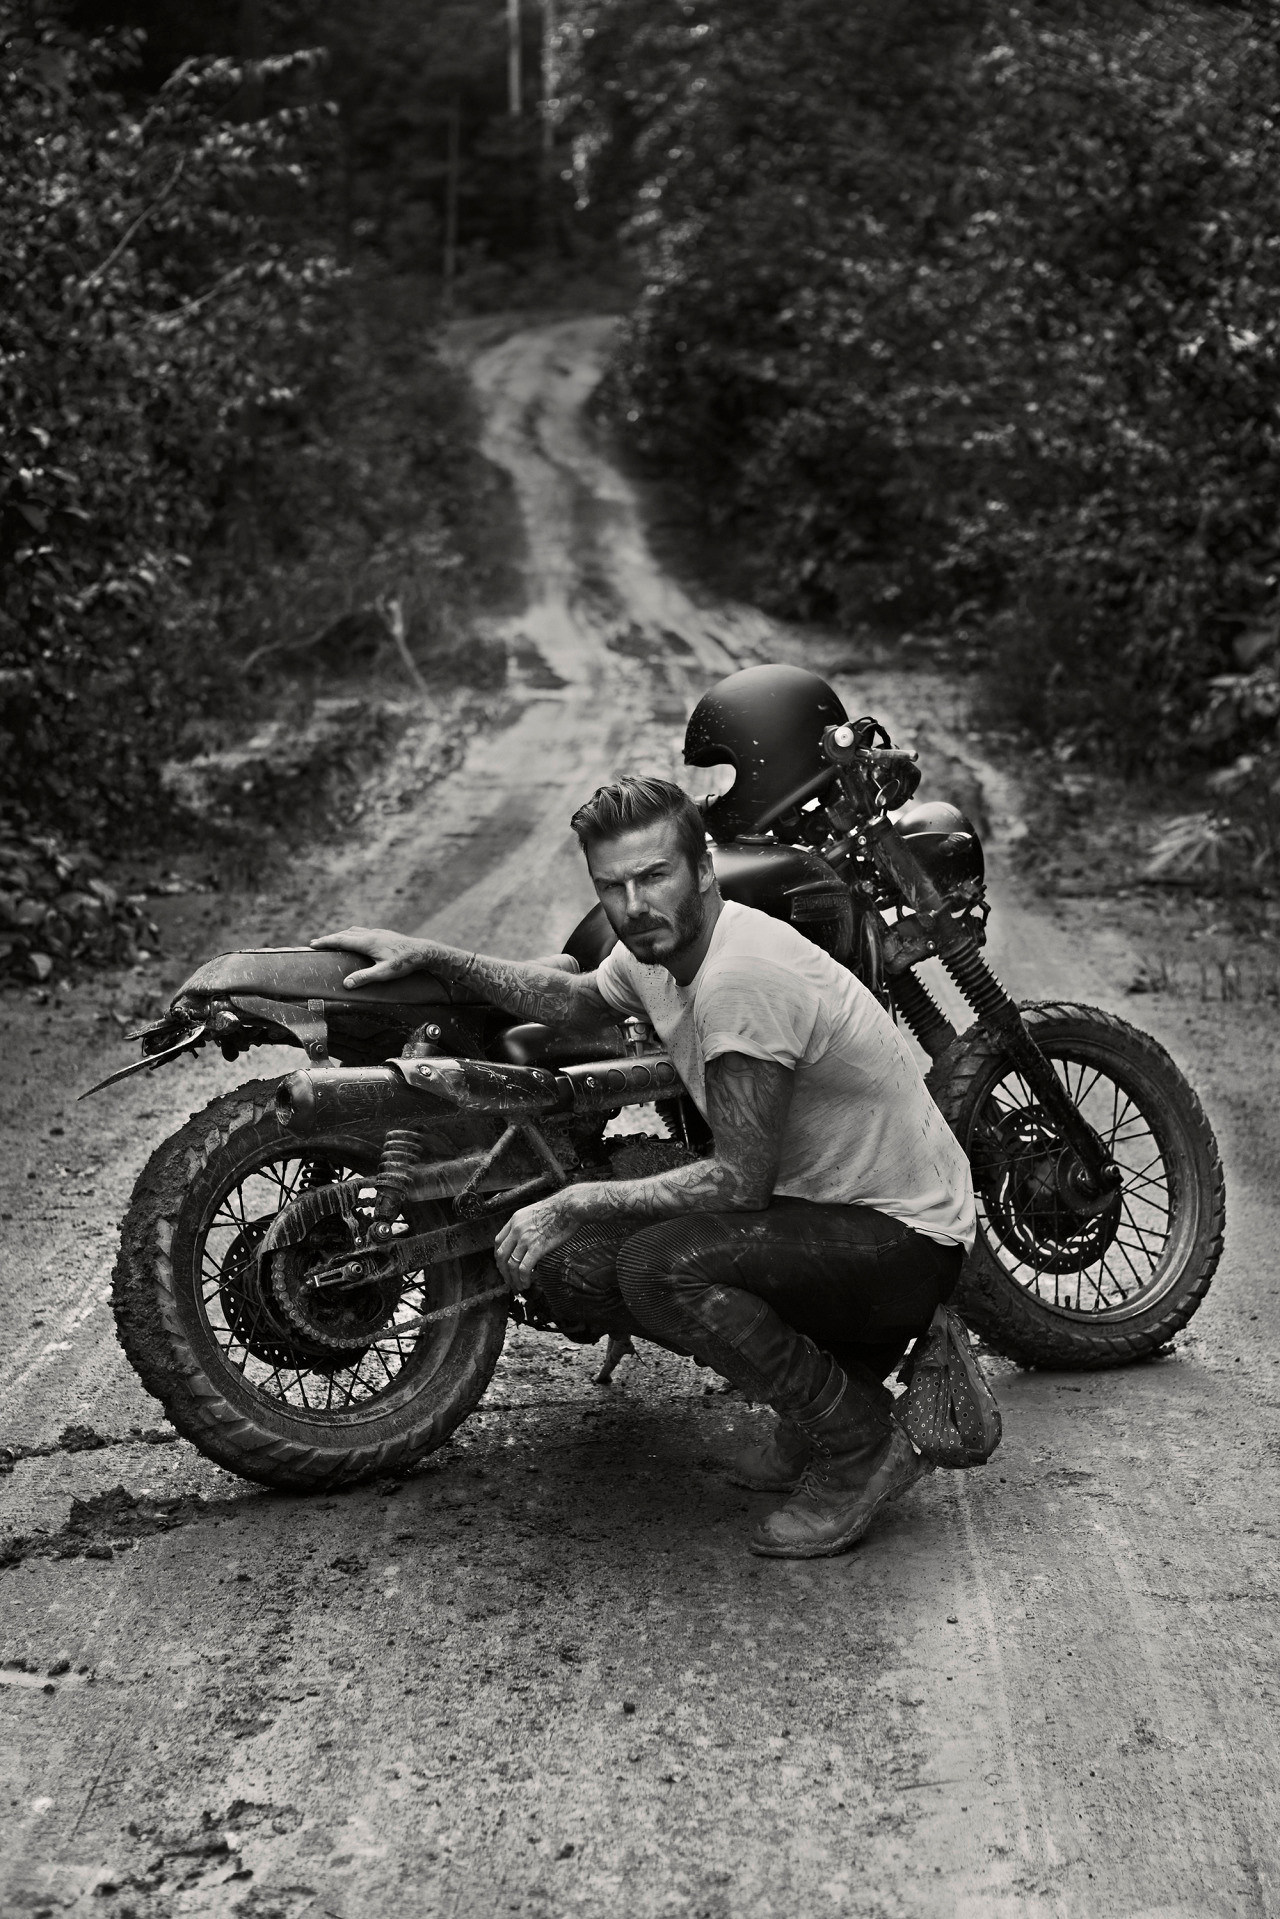 1280x1919, 626 Kb / ч/б, Дэвид Бекхэм, мотоцикл, грязь, дорога, тату, шлем, майка, Beckham